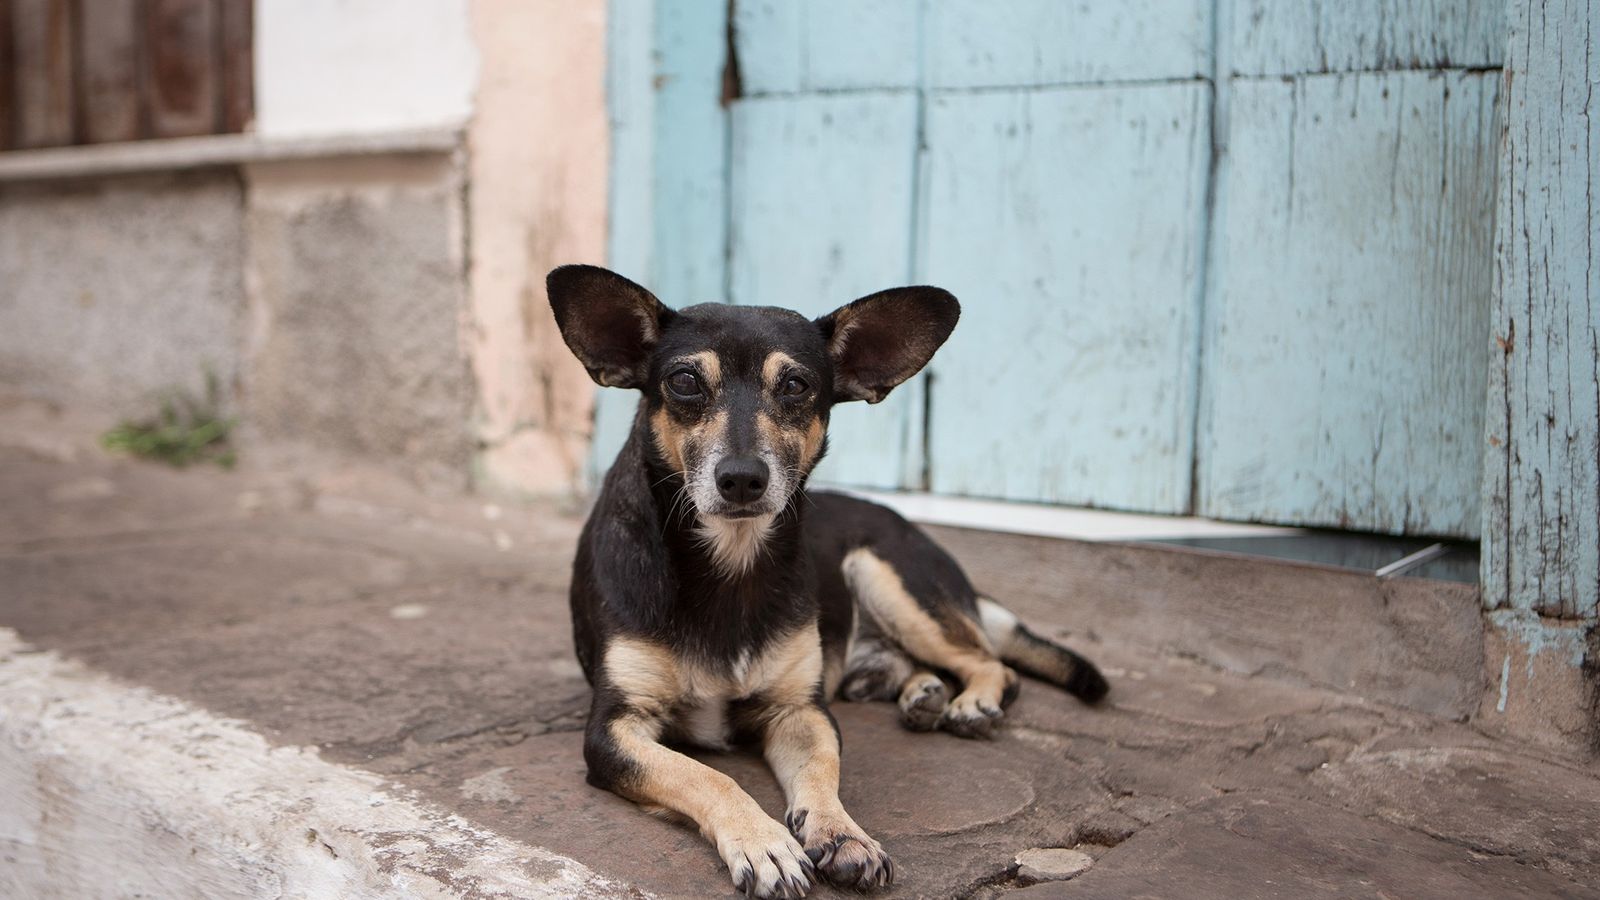 Carne de perro en puesto de tacos sacude la comunidad PETA Latino